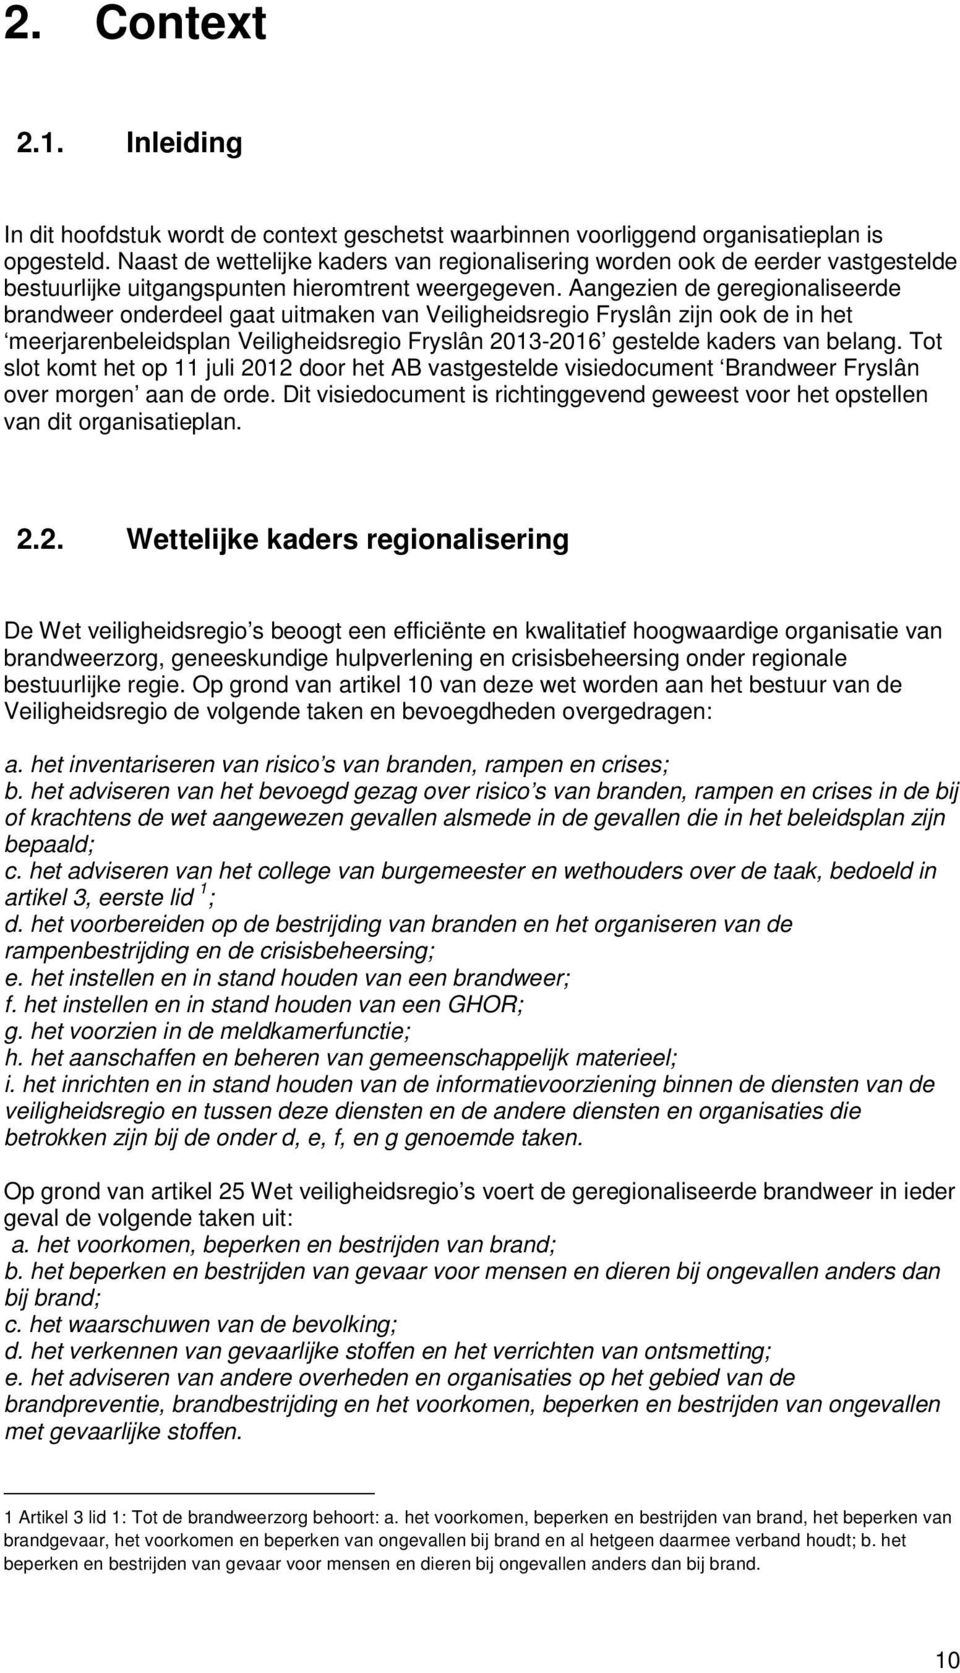 Aangezien de geregionaliseerde brandweer onderdeel gaat uitmaken van Veiligheidsregio Fryslân zijn ook de in het meerjarenbeleidsplan Veiligheidsregio Fryslân 2013-2016 gestelde kaders van belang.